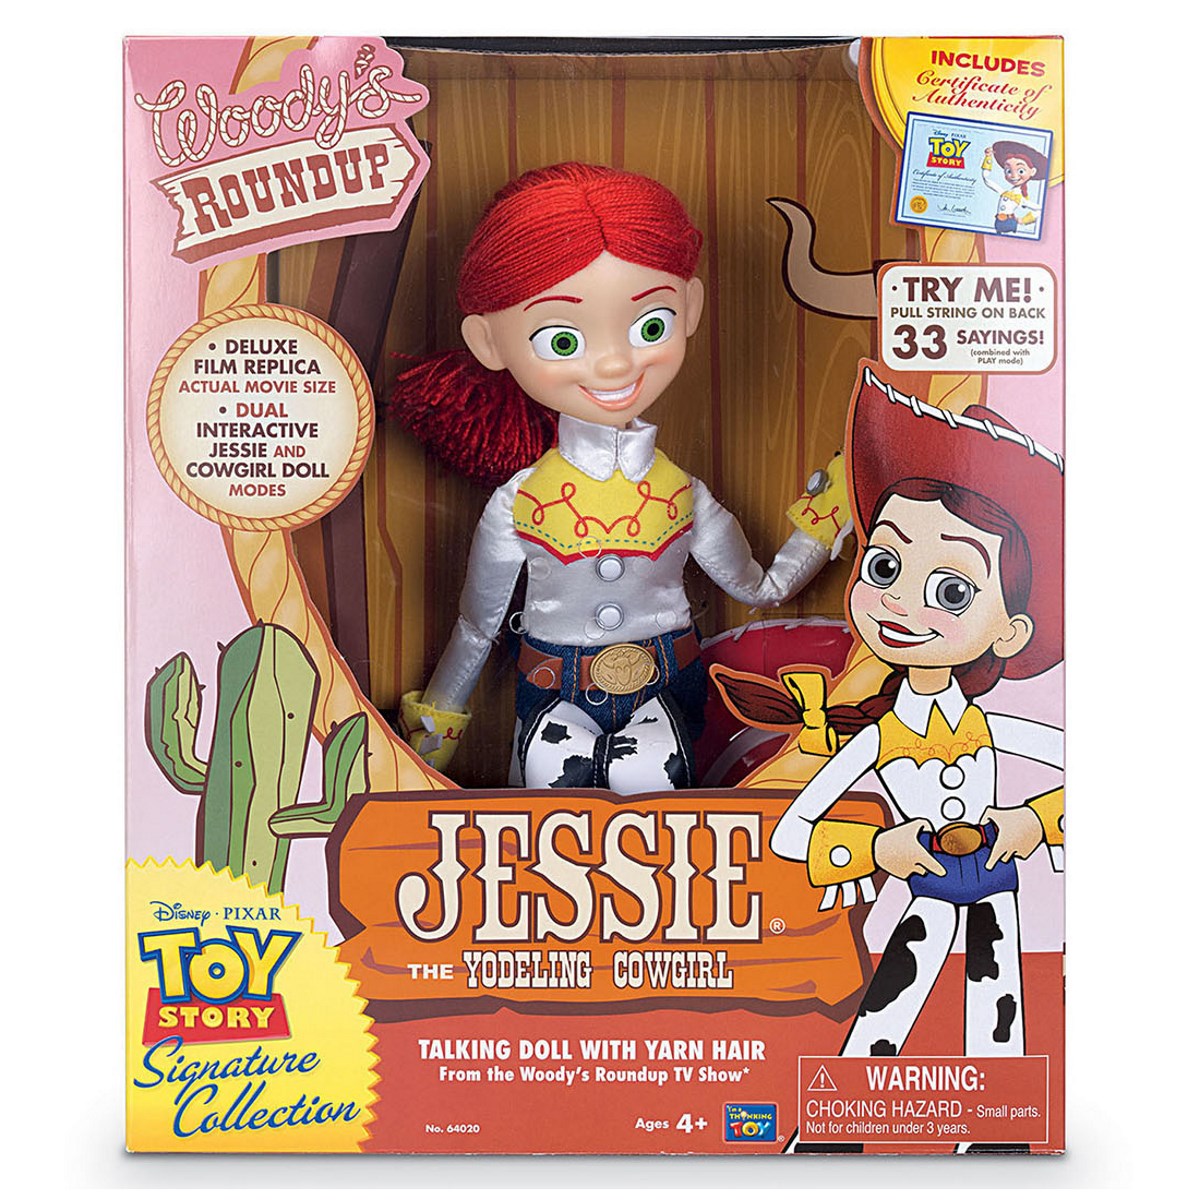 Jessie Toy Story Toy Story 3 Toy Story Theme Toy Stor - vrogue.co